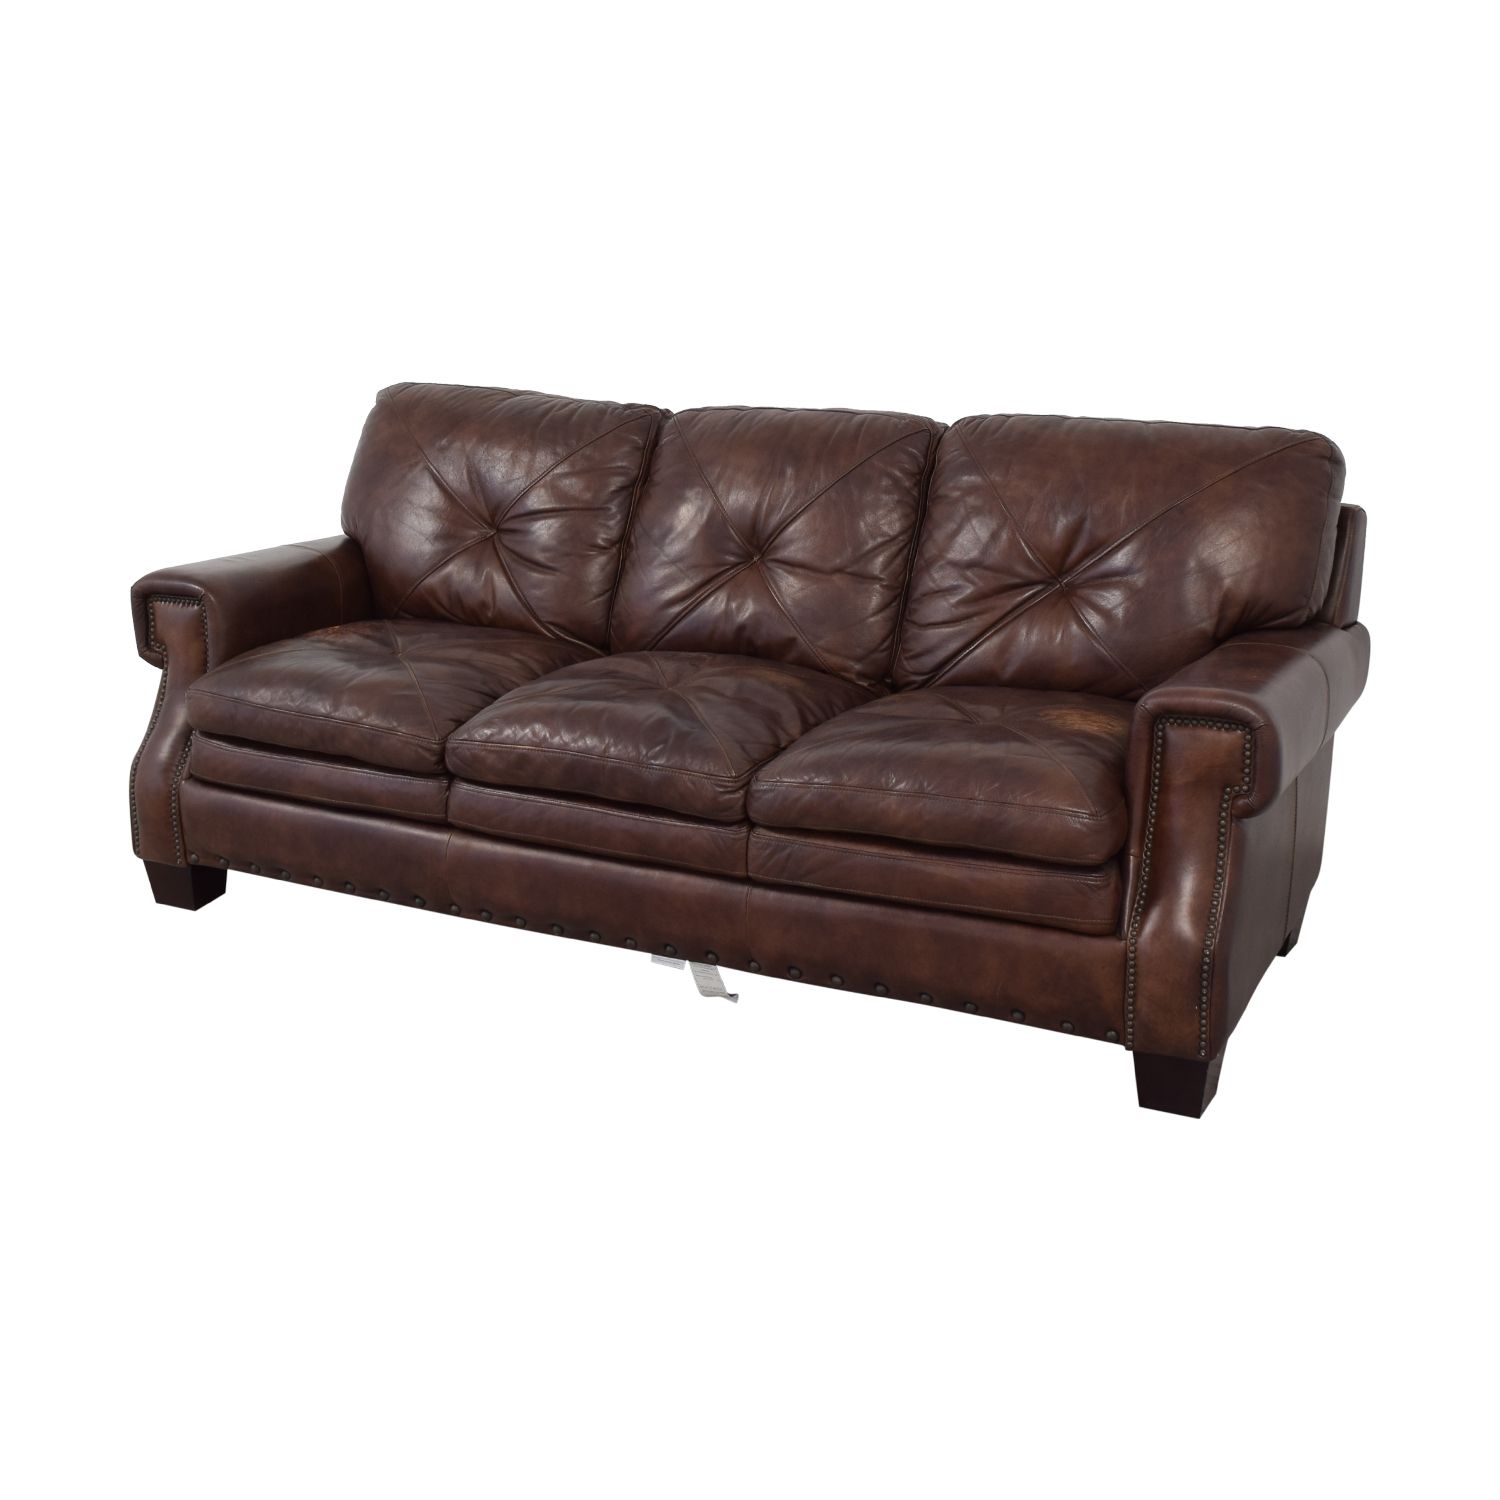 Bobs Furniture Leather Sofa : Trailblazer Gray Leather Throughout Trailblazer Gray Leather Power Reclining Sofas (View 5 of 15)